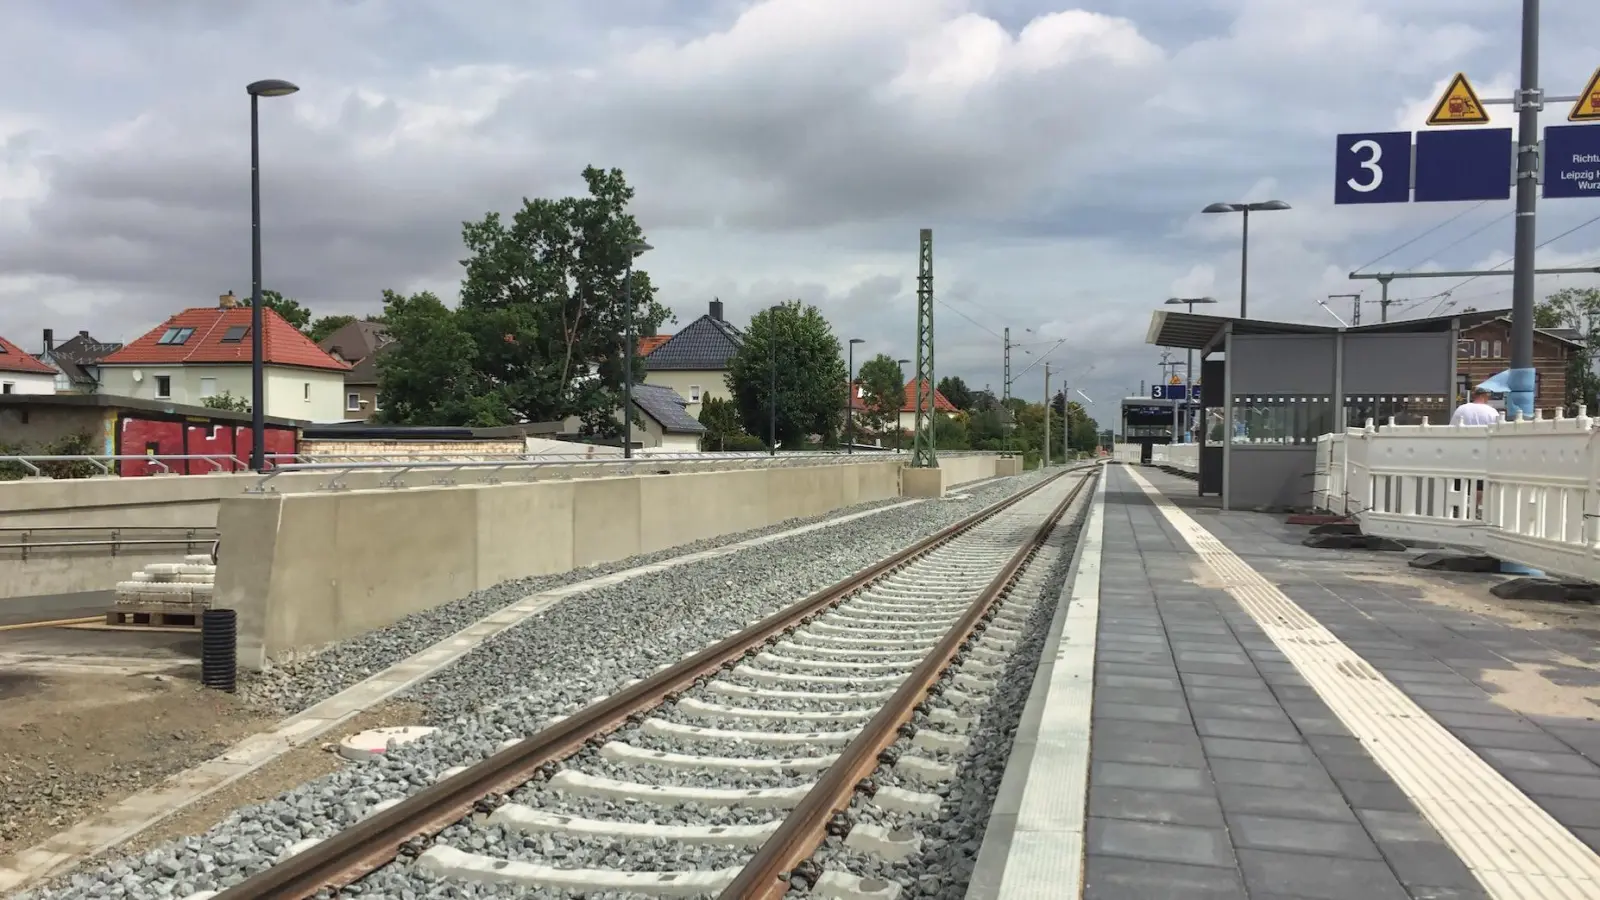 Bahnhofs-Umbau: Anwohner nicht erfreut über nächtliche Arbeiten (Foto: taucha-kompakt.de)